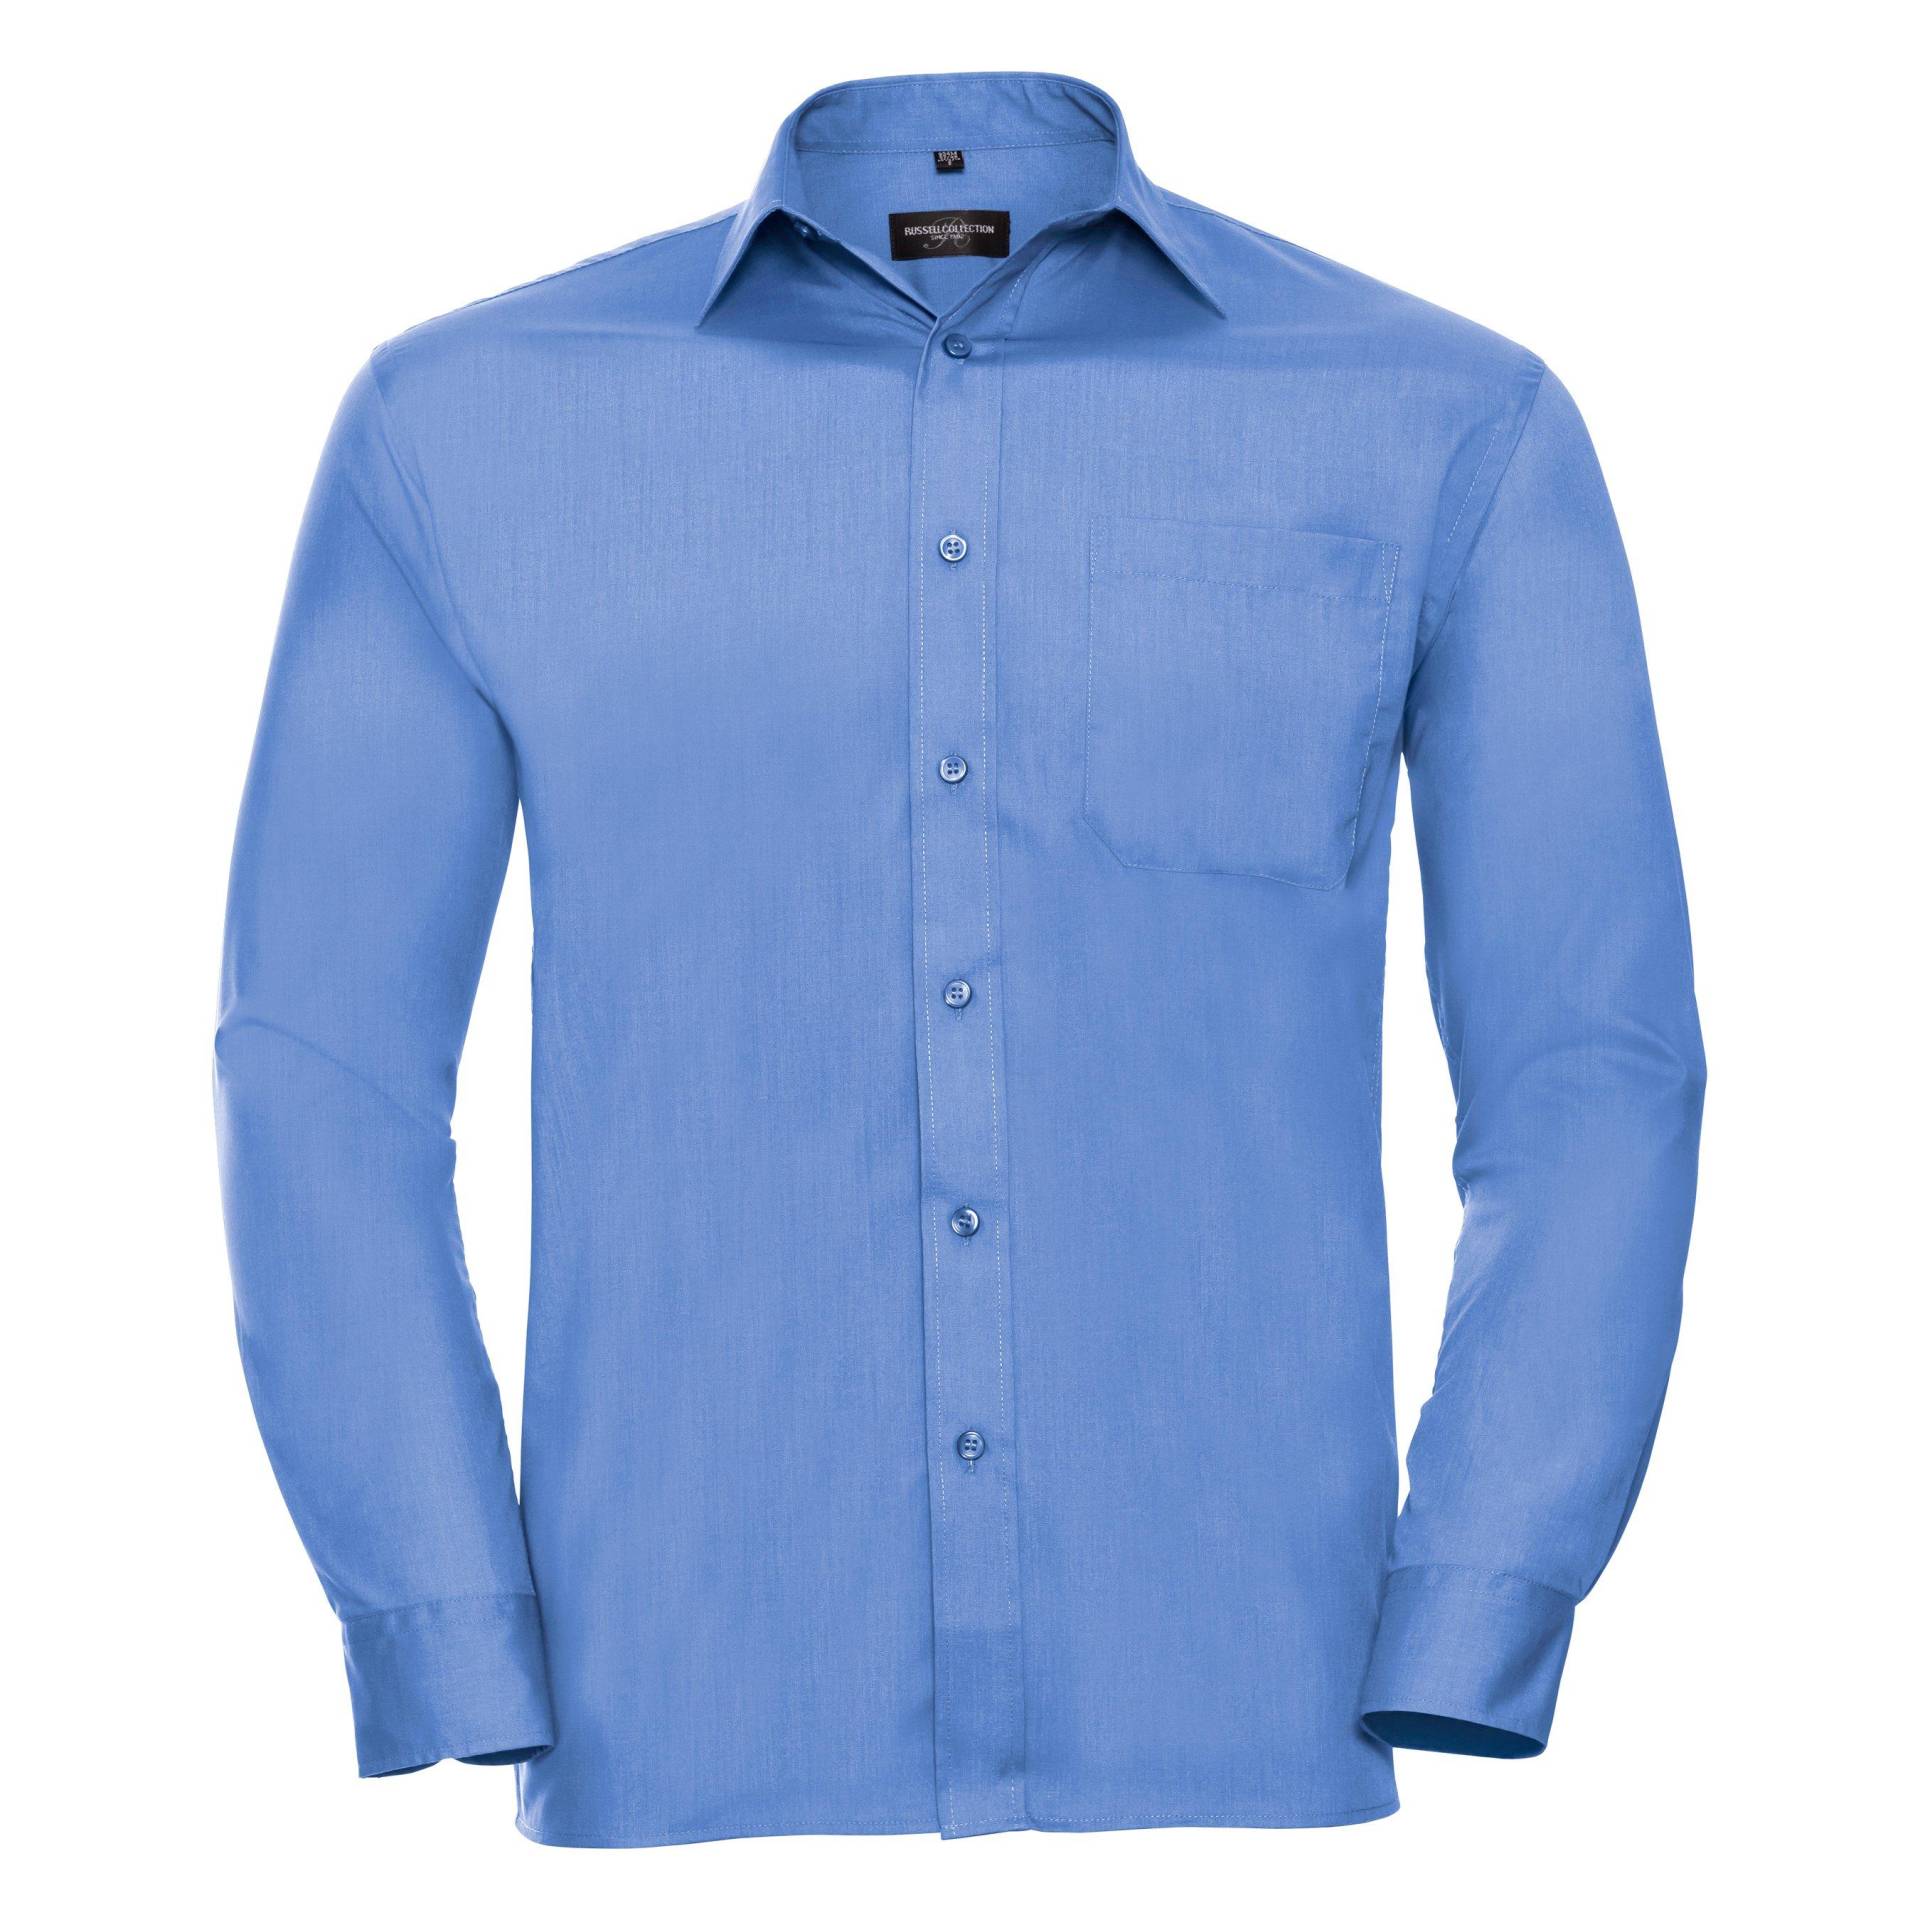 Collection Langarm Hemd Herren Blau 16 von Russell